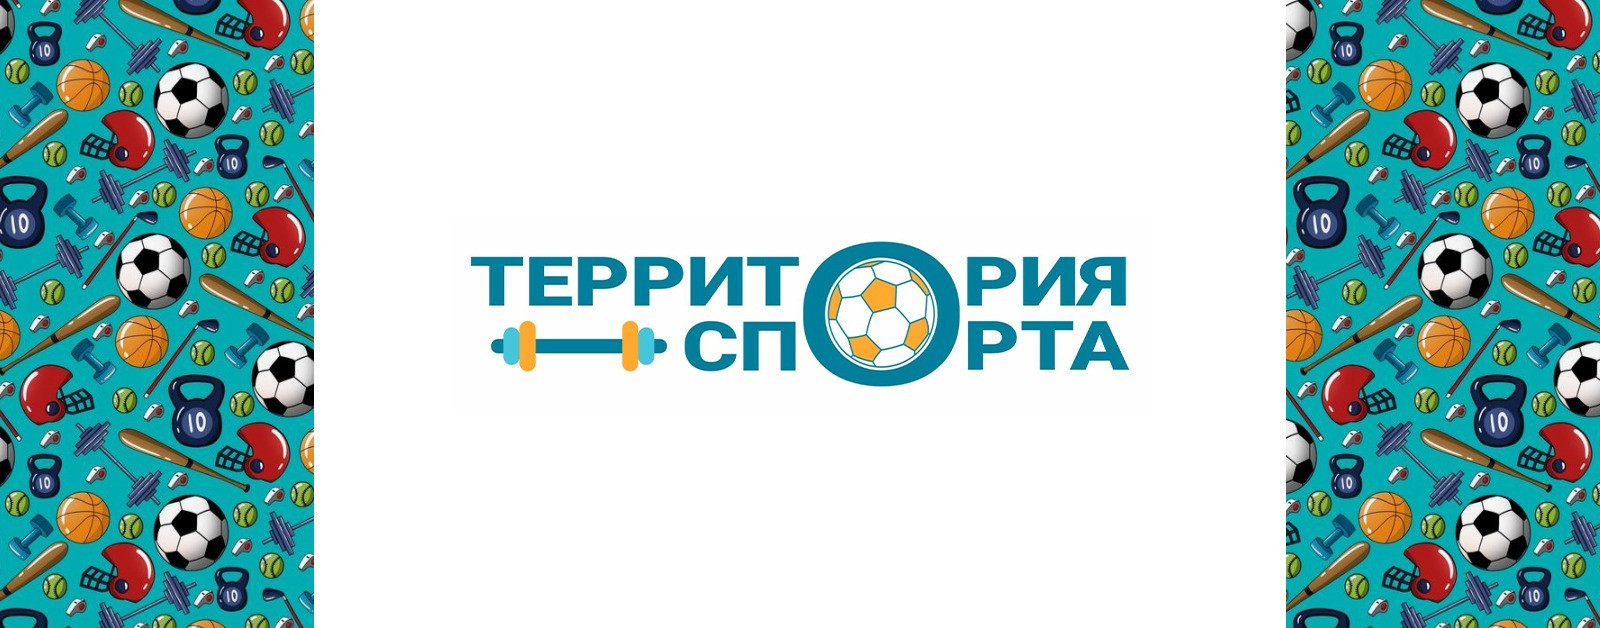 Ксения Пенькова: Футбольная форма для детей из детских домов